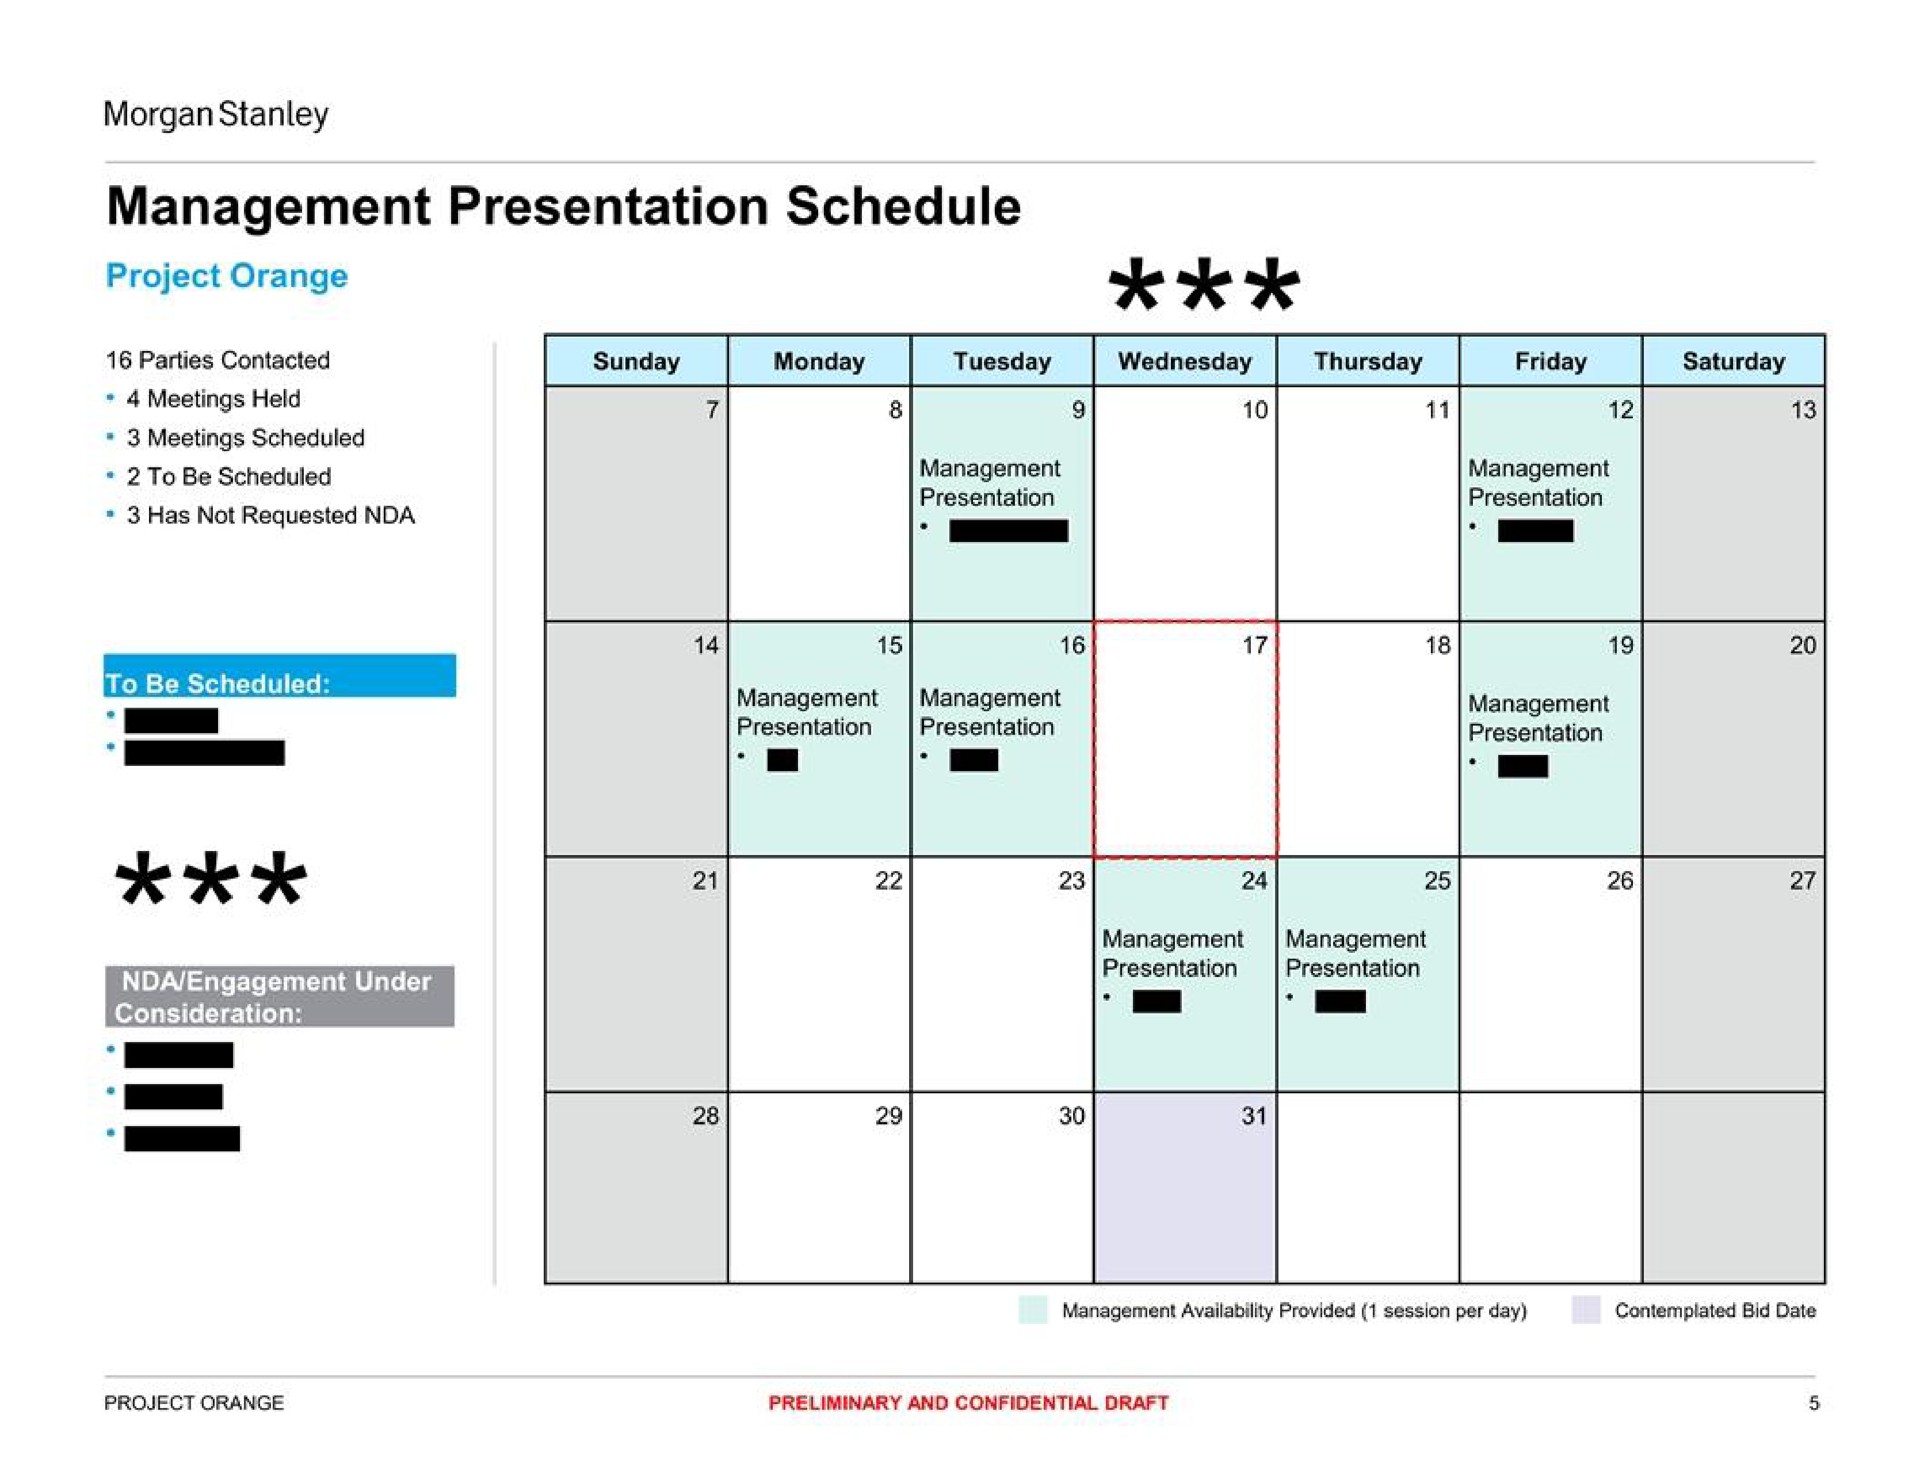 management presentation schedule | Morgan Stanley